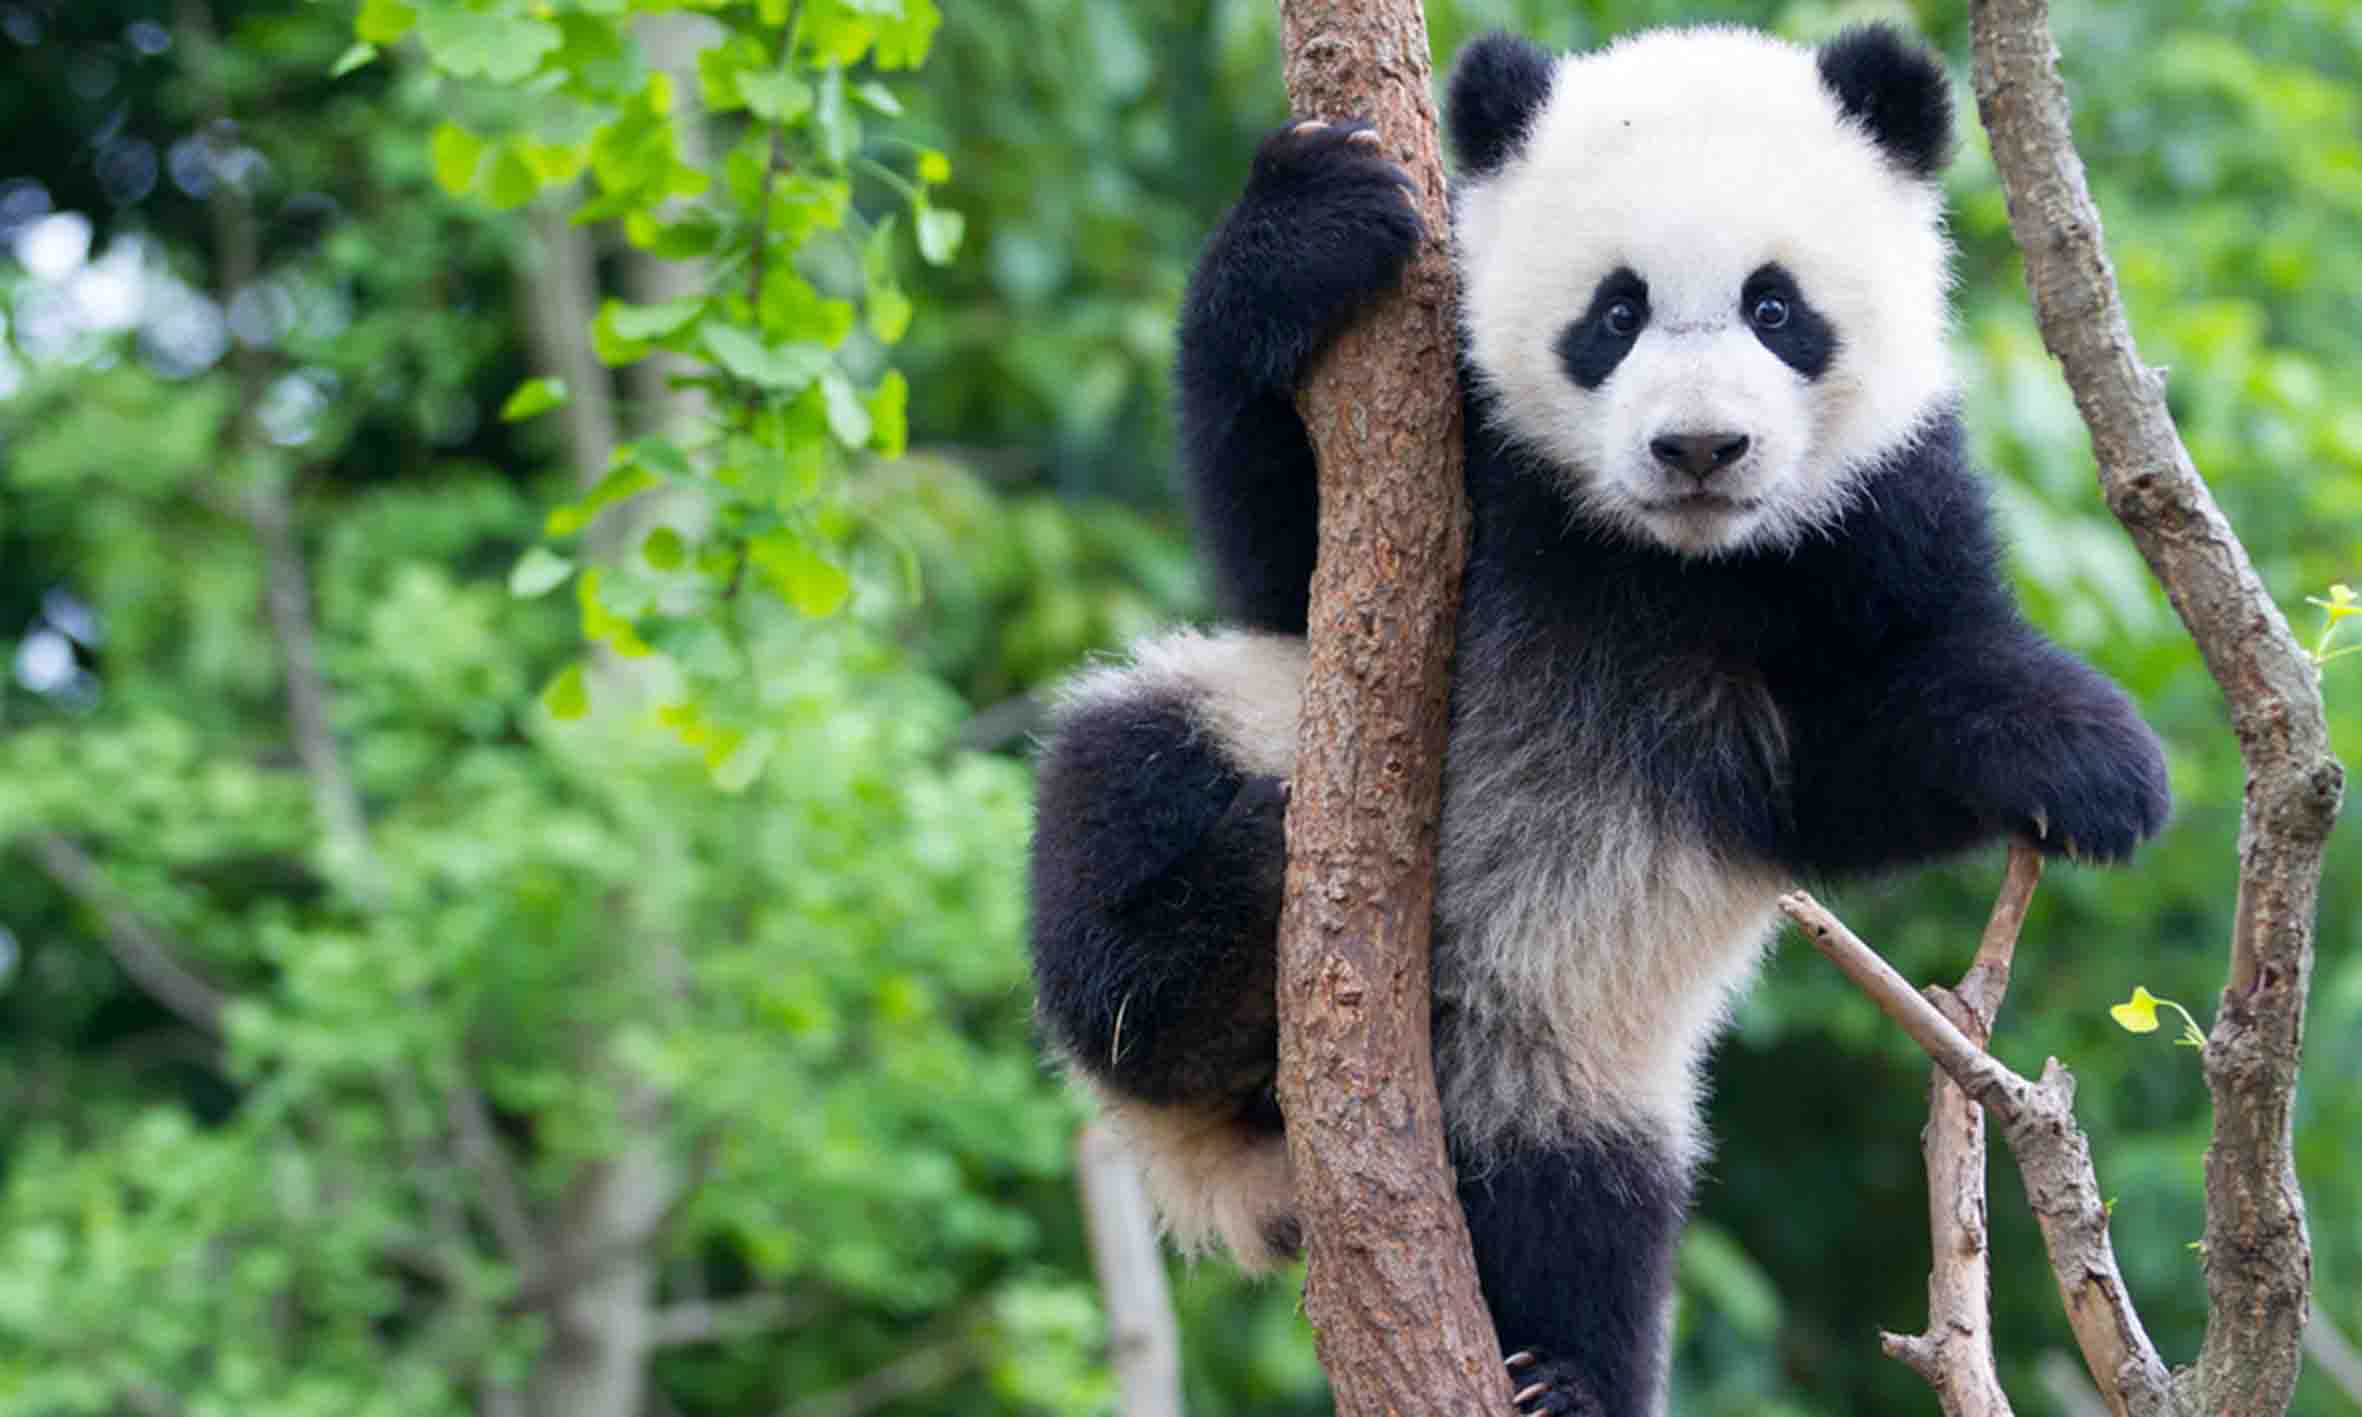 Panda is cute.